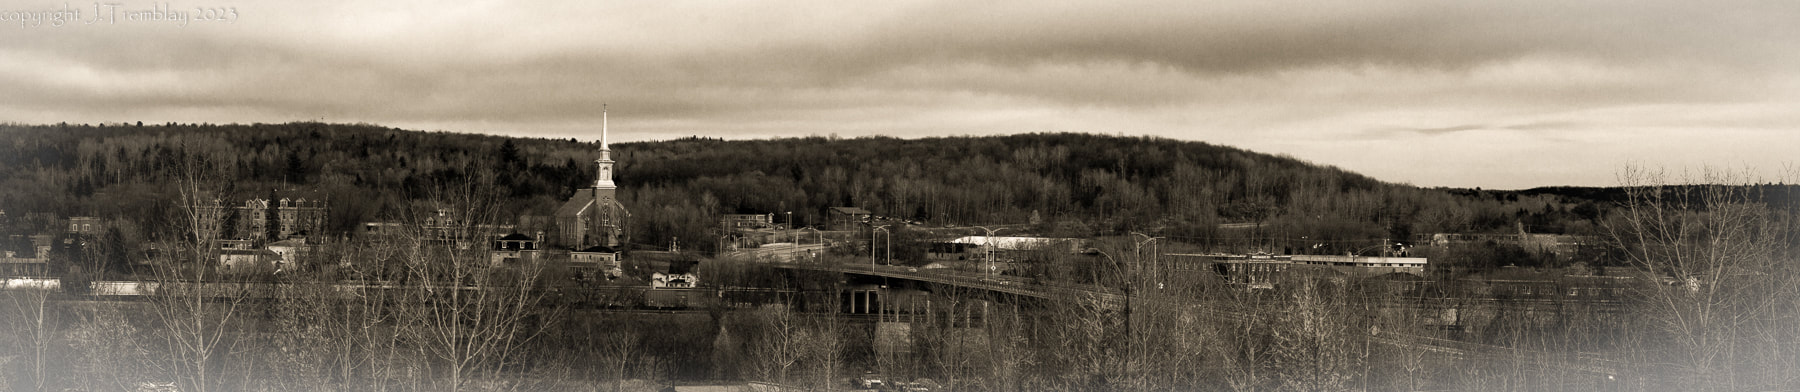 Richmond QC, Black and white, church steeple, bridge, eastern townships canada, canon